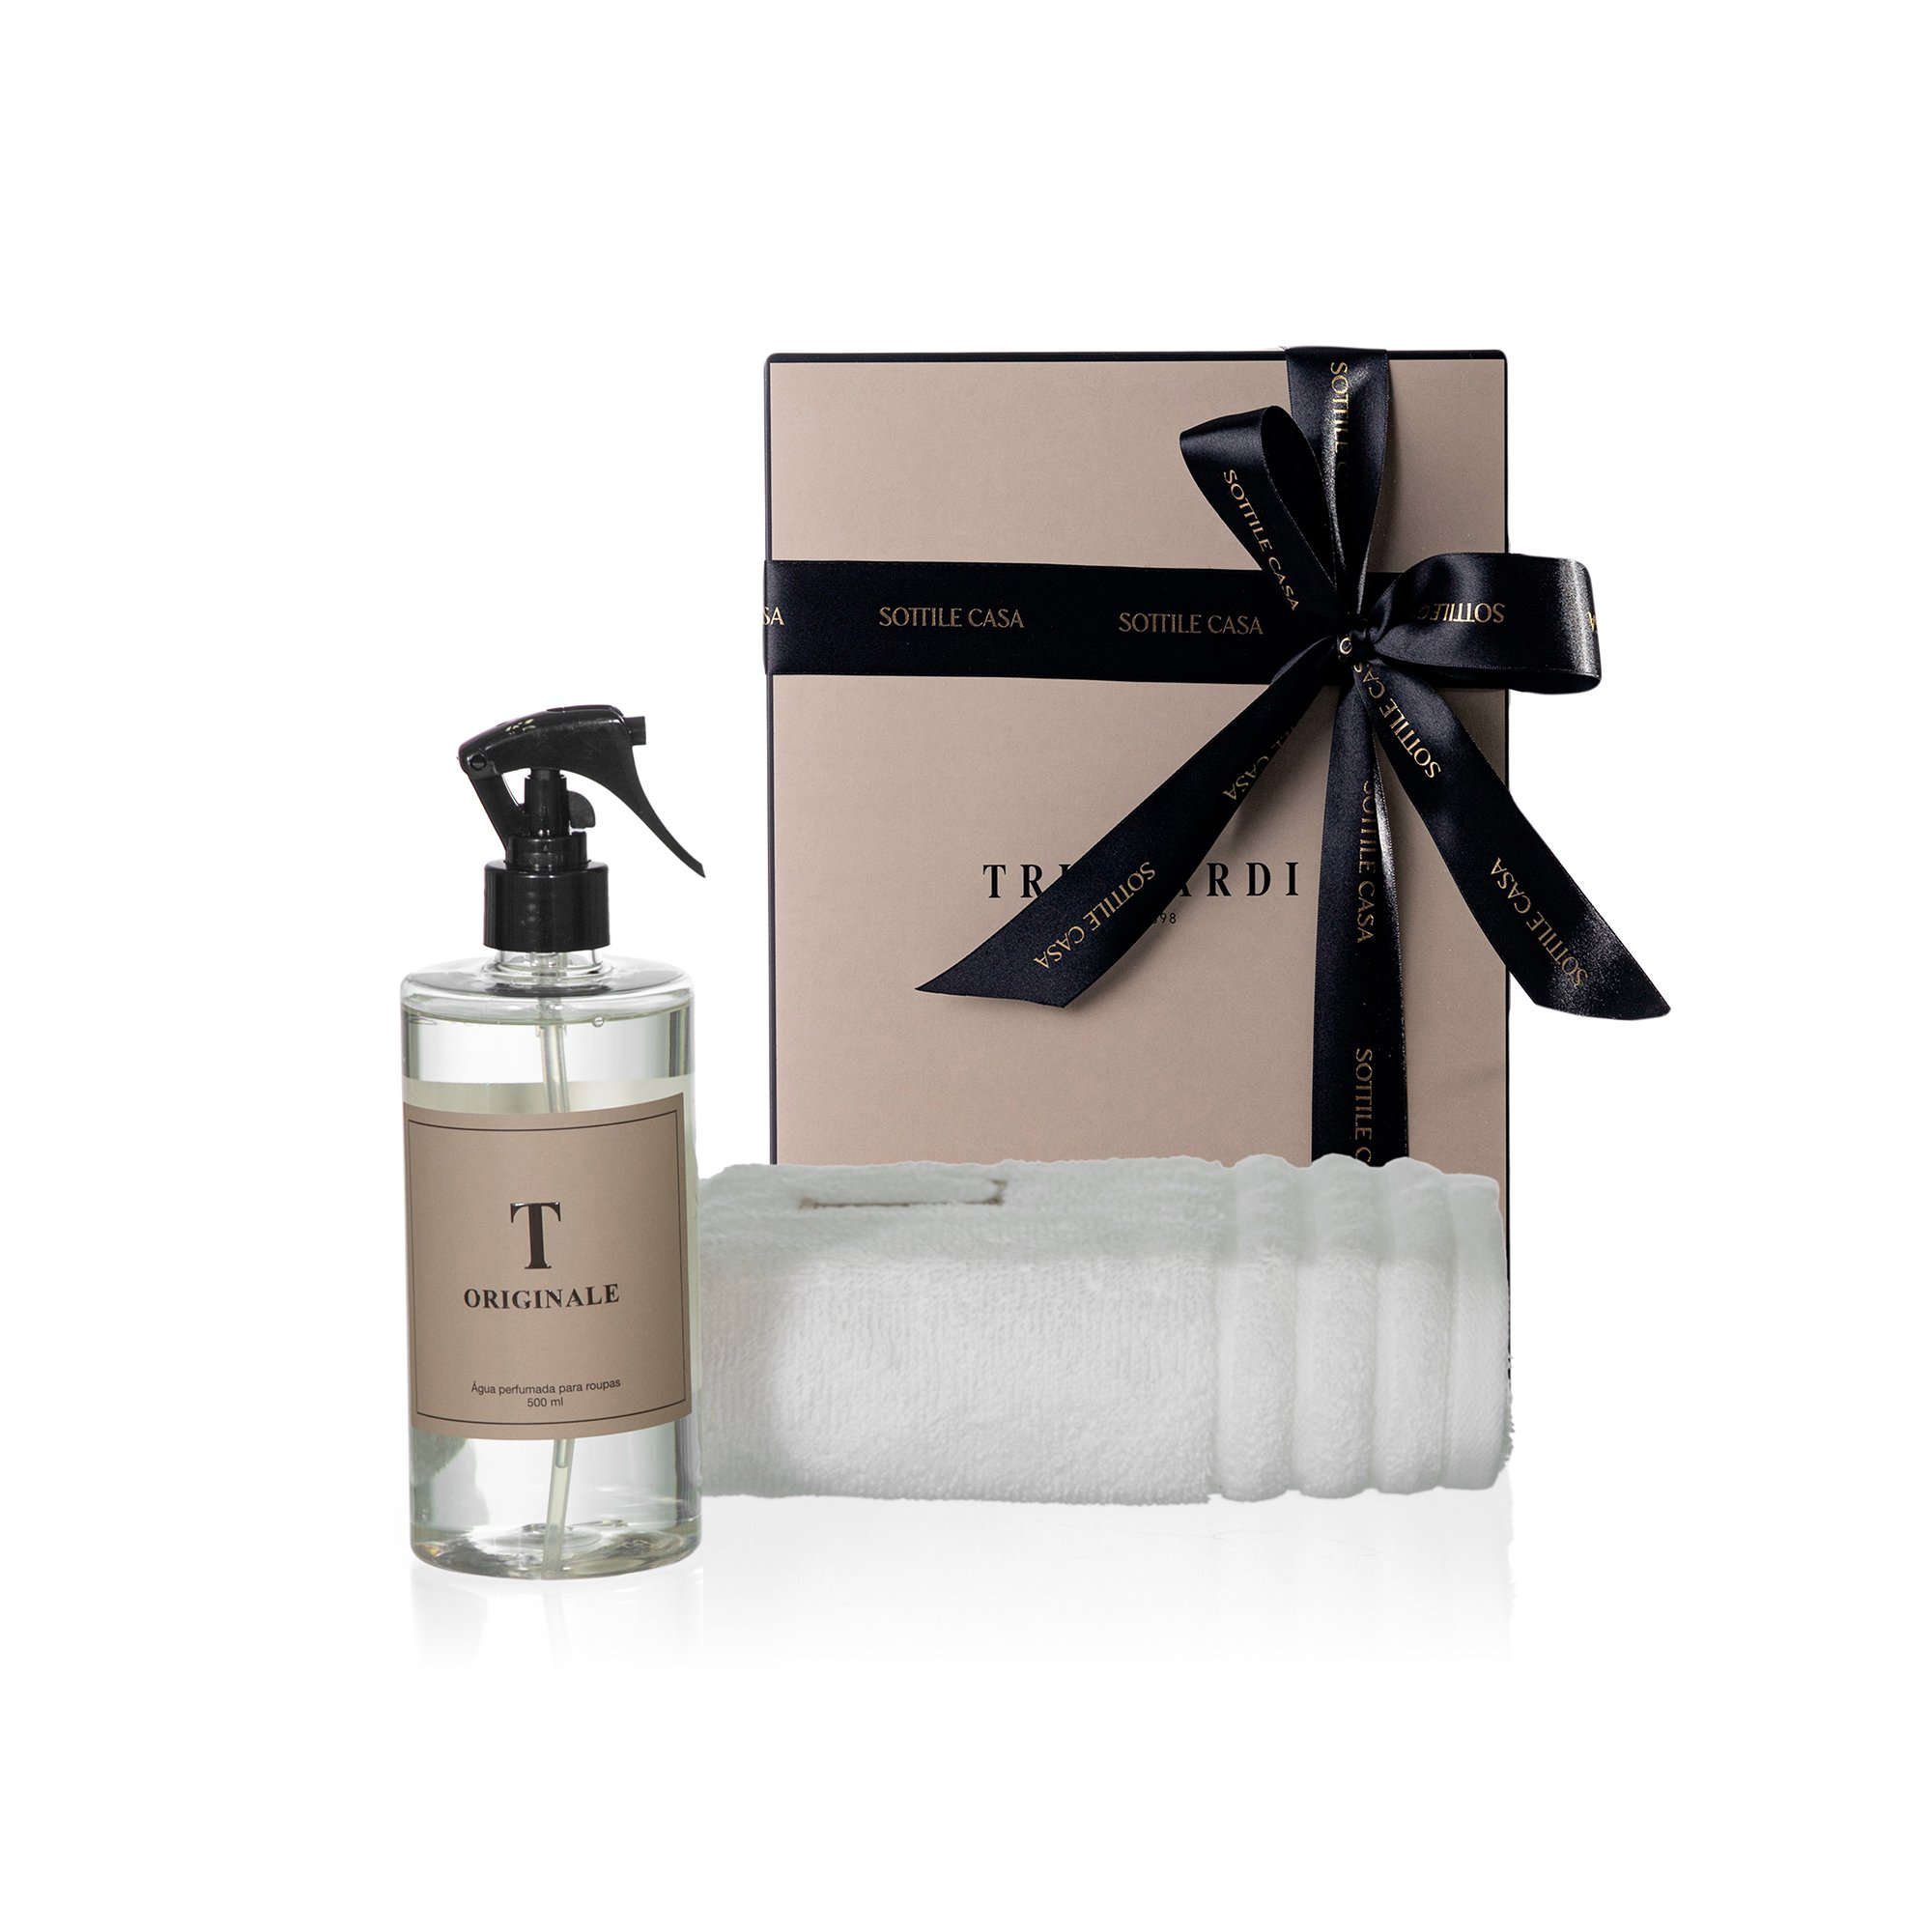 kit toalha de rosto 100 algodao trussardi imperiale branco com agua perfumada trussardi 500ml originale com caixa de presente